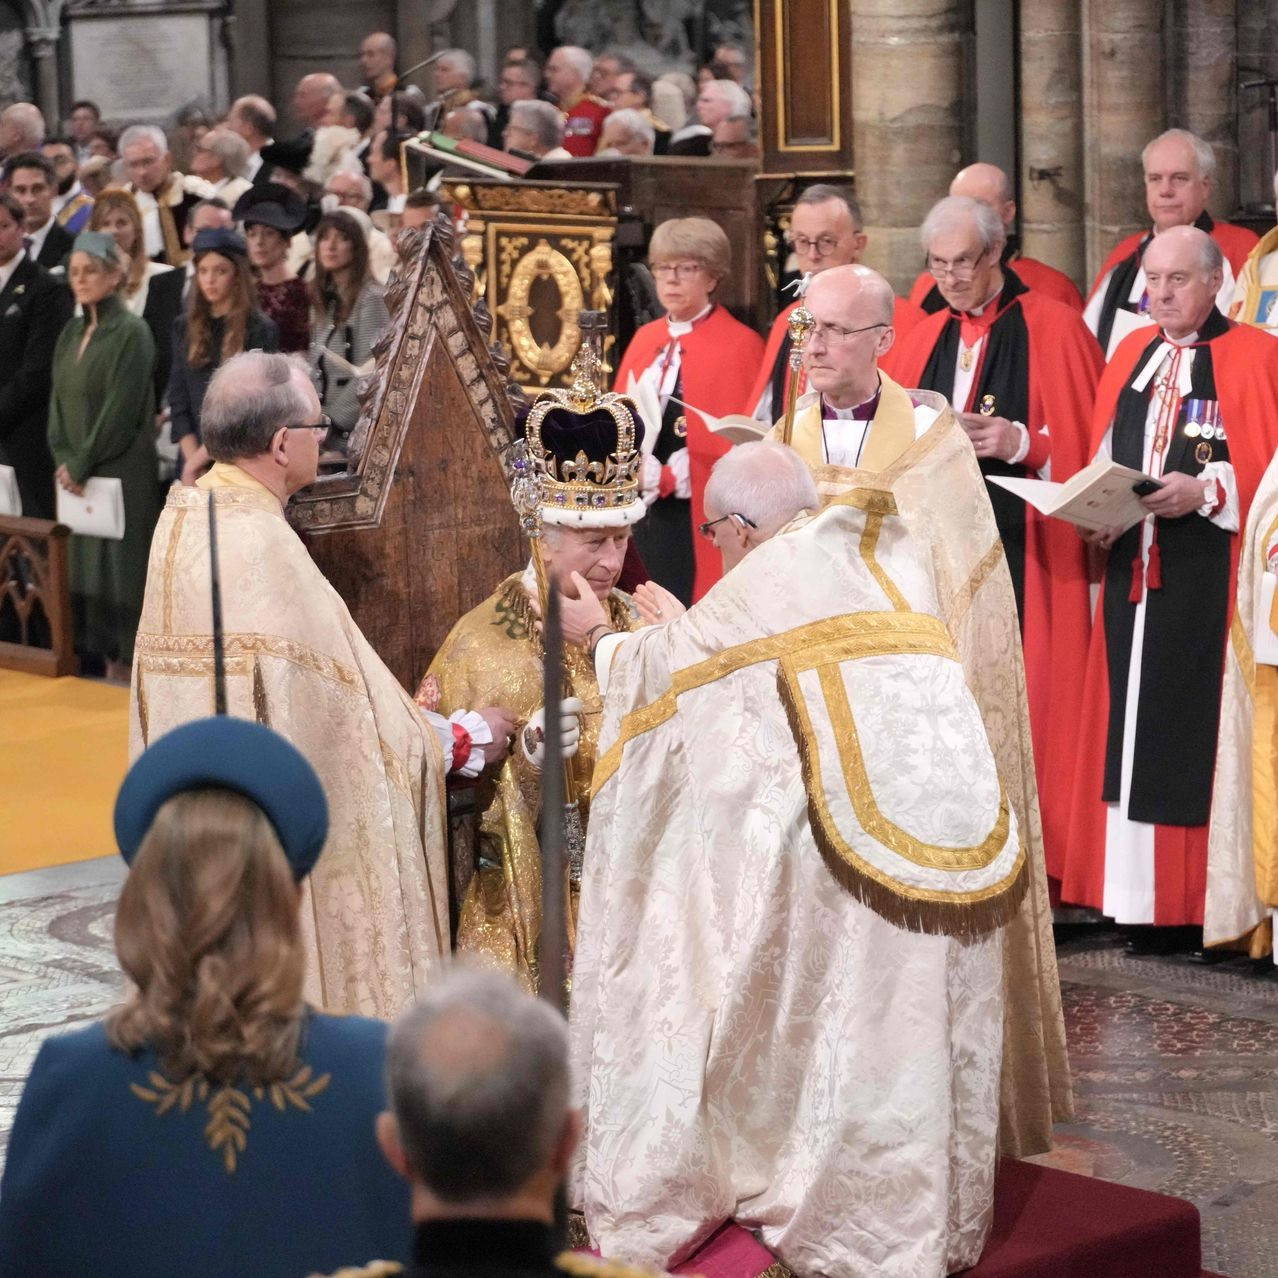 Sau khi đặt tay lên quyển thánh kinh để tuyên thệ, Vua Charles III đã được Tổng giám mục Canterbury Justin Welby ban phép lành và đặt lên đầu vương miện bằng vàng ròng, gắn nhiều đá quý.